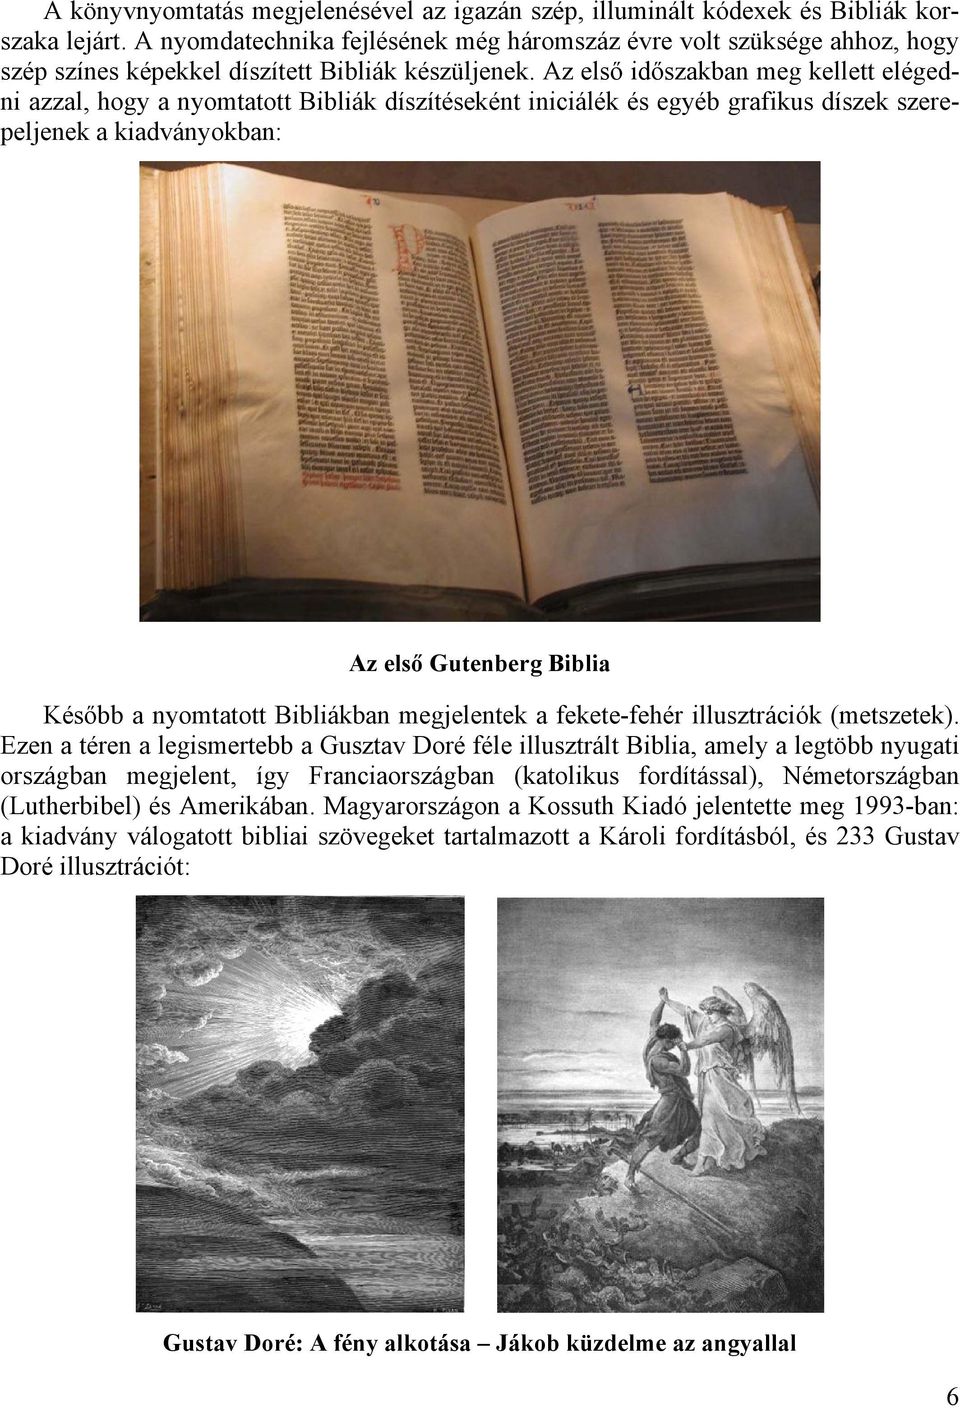 Az első időszakban meg kellett elégedni azzal, hogy a nyomtatott Bibliák díszítéseként iniciálék és egyéb grafikus díszek szerepeljenek a kiadványokban: Az első Gutenberg Biblia Később a nyomtatott